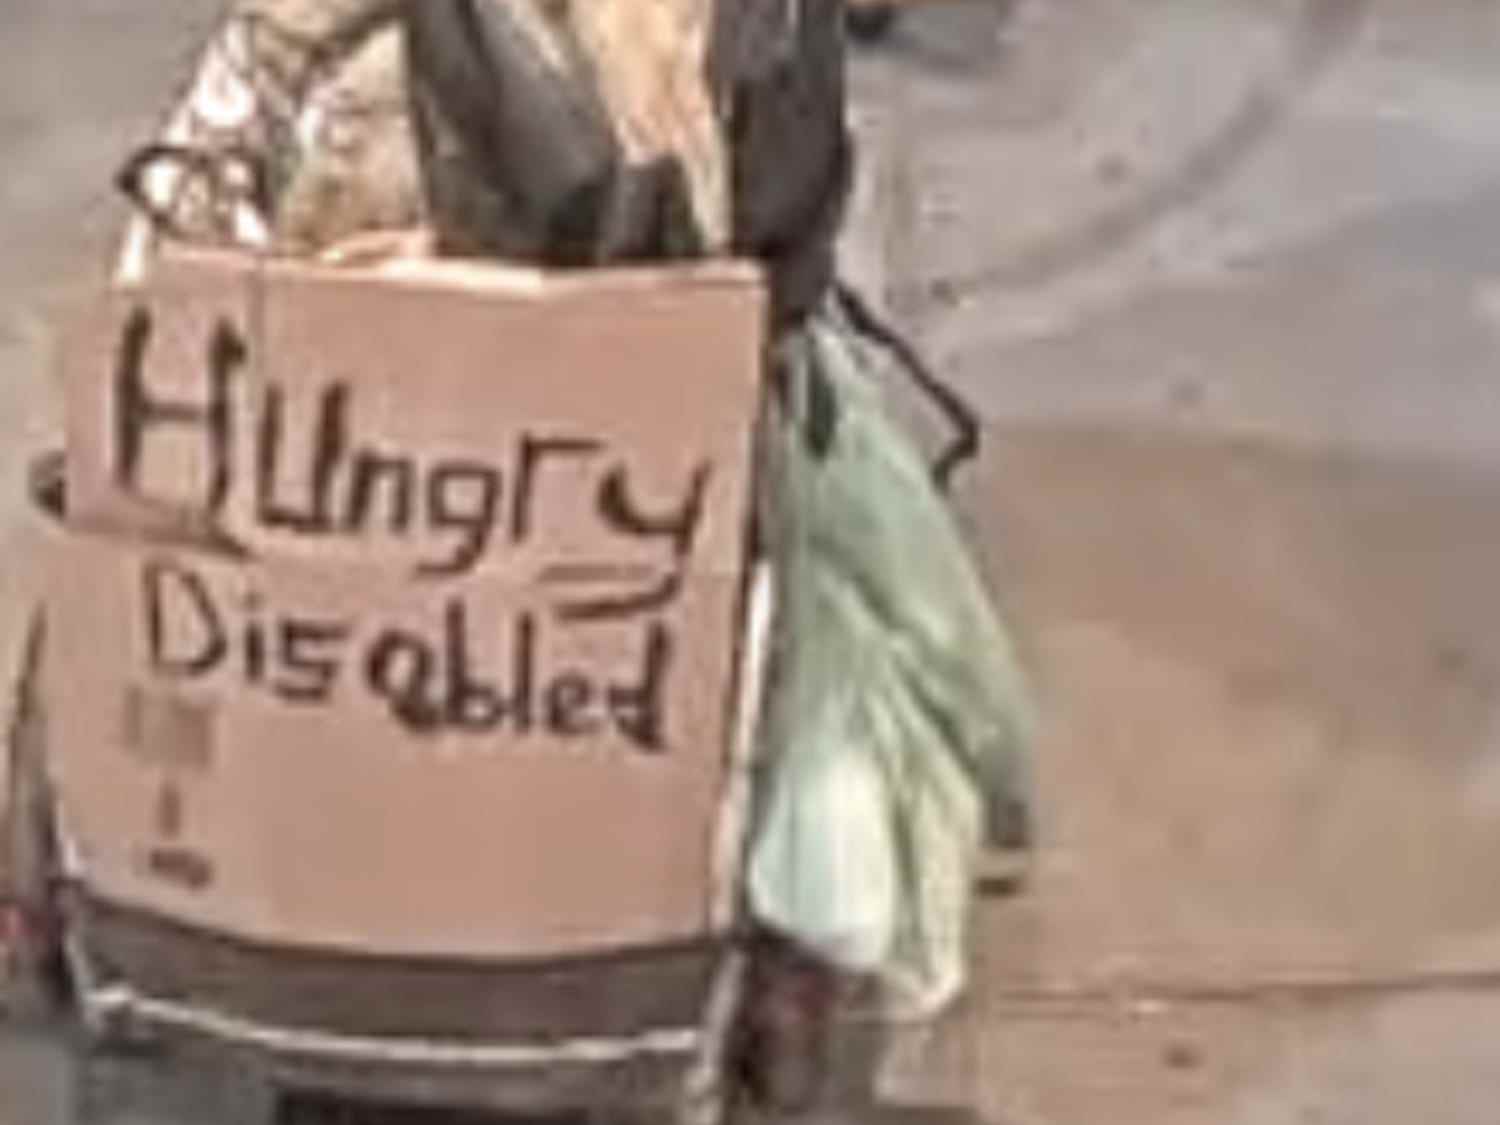 „Hungry Disabled“-Schild auf Anhänger des mutmaßlichen Angreifers bei antisemitischem Vorfall im Central Park